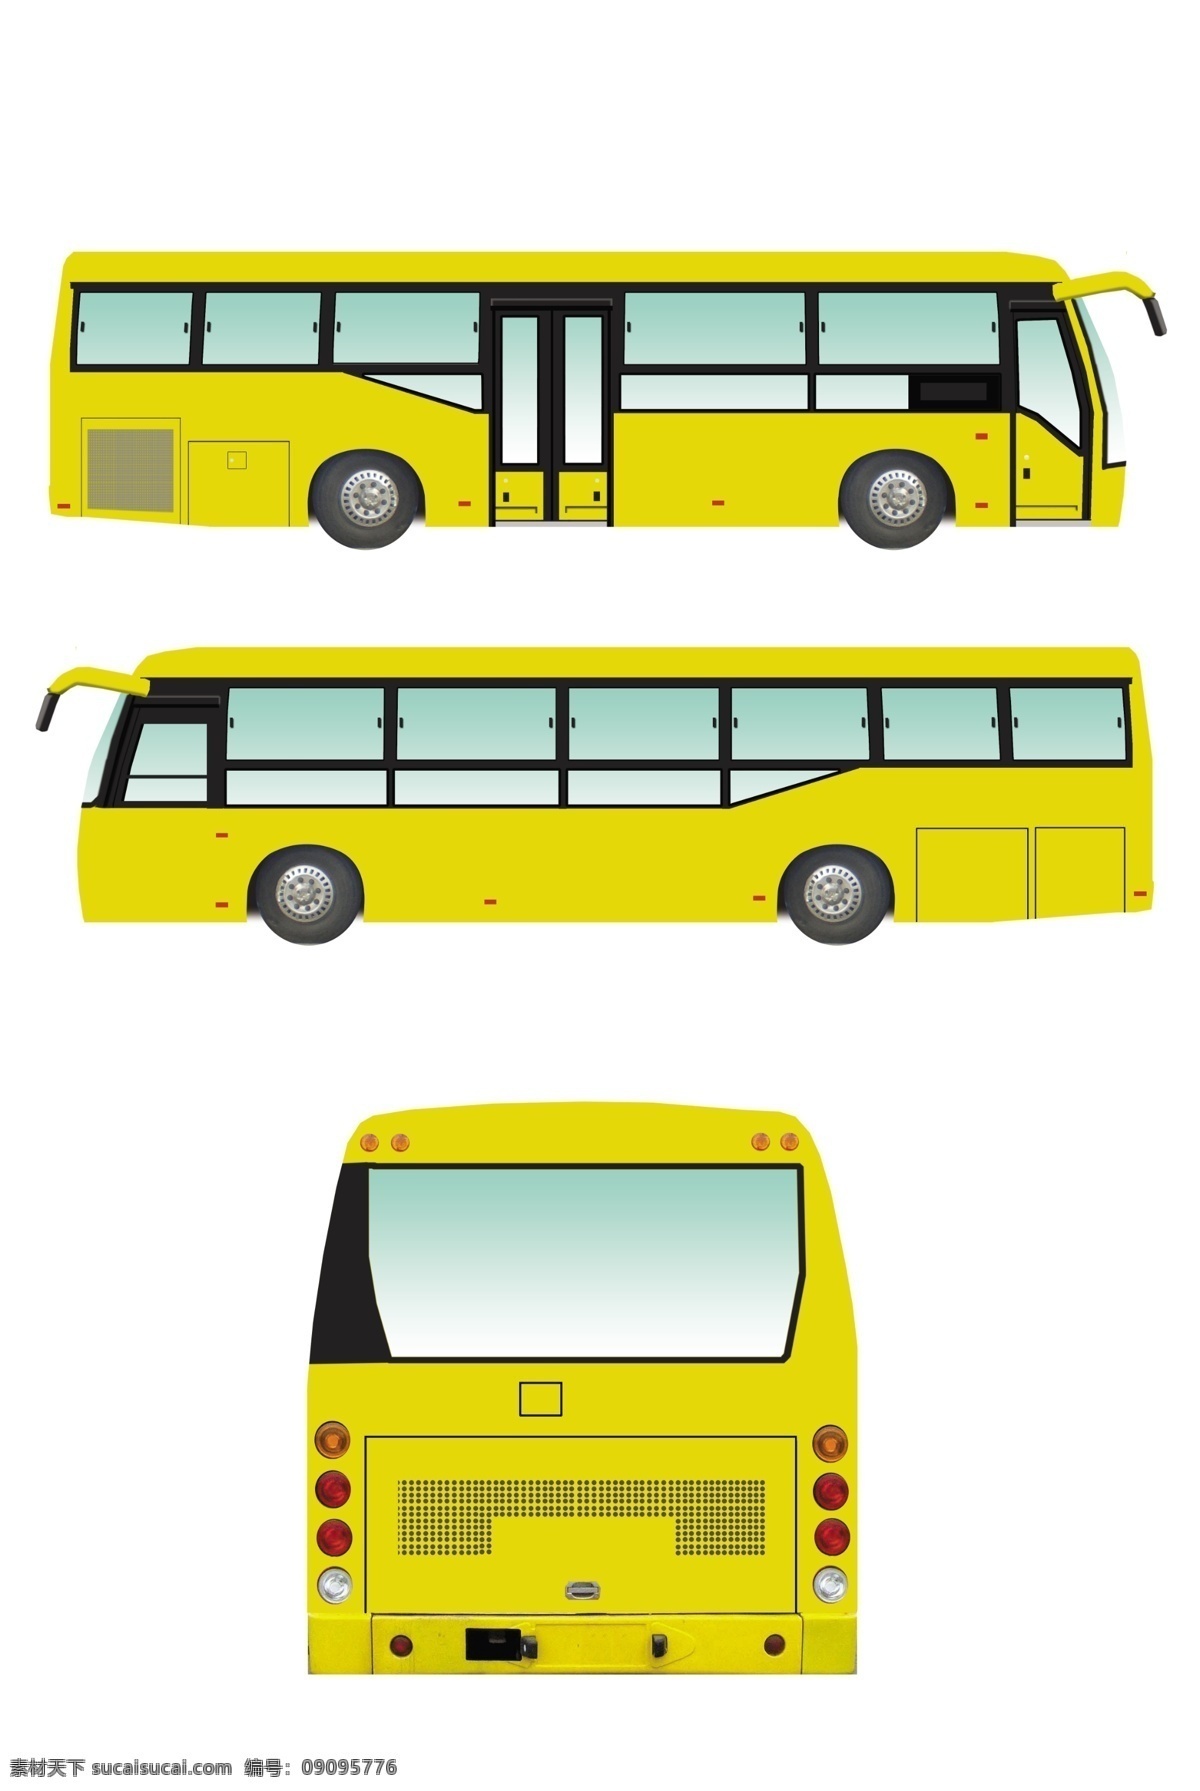 公交车车体 公交车 卡通 卡通公交车 卡通动漫 巴士双层巴士 双层公交车 车体 车体广告 汽车 汽车模型